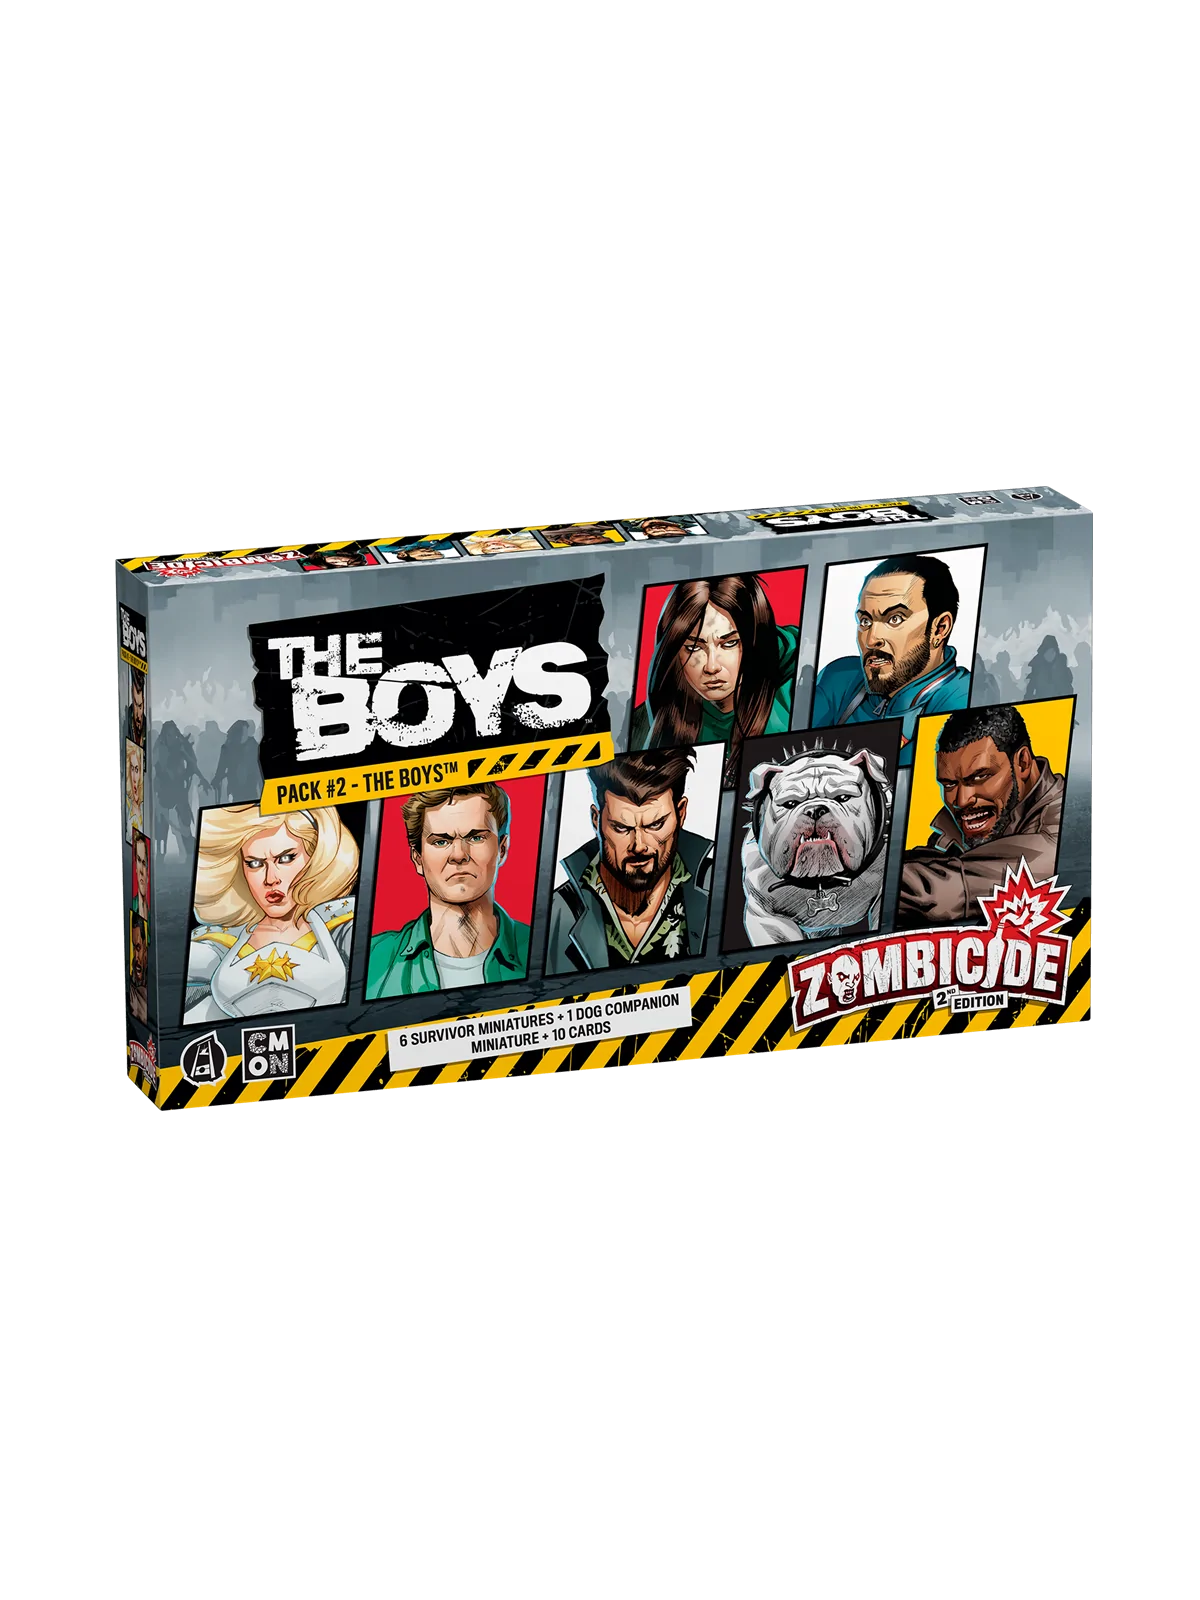 Comprar Zombicide Segunda Edicion: The Boys Pack 2 barato al mejor pre